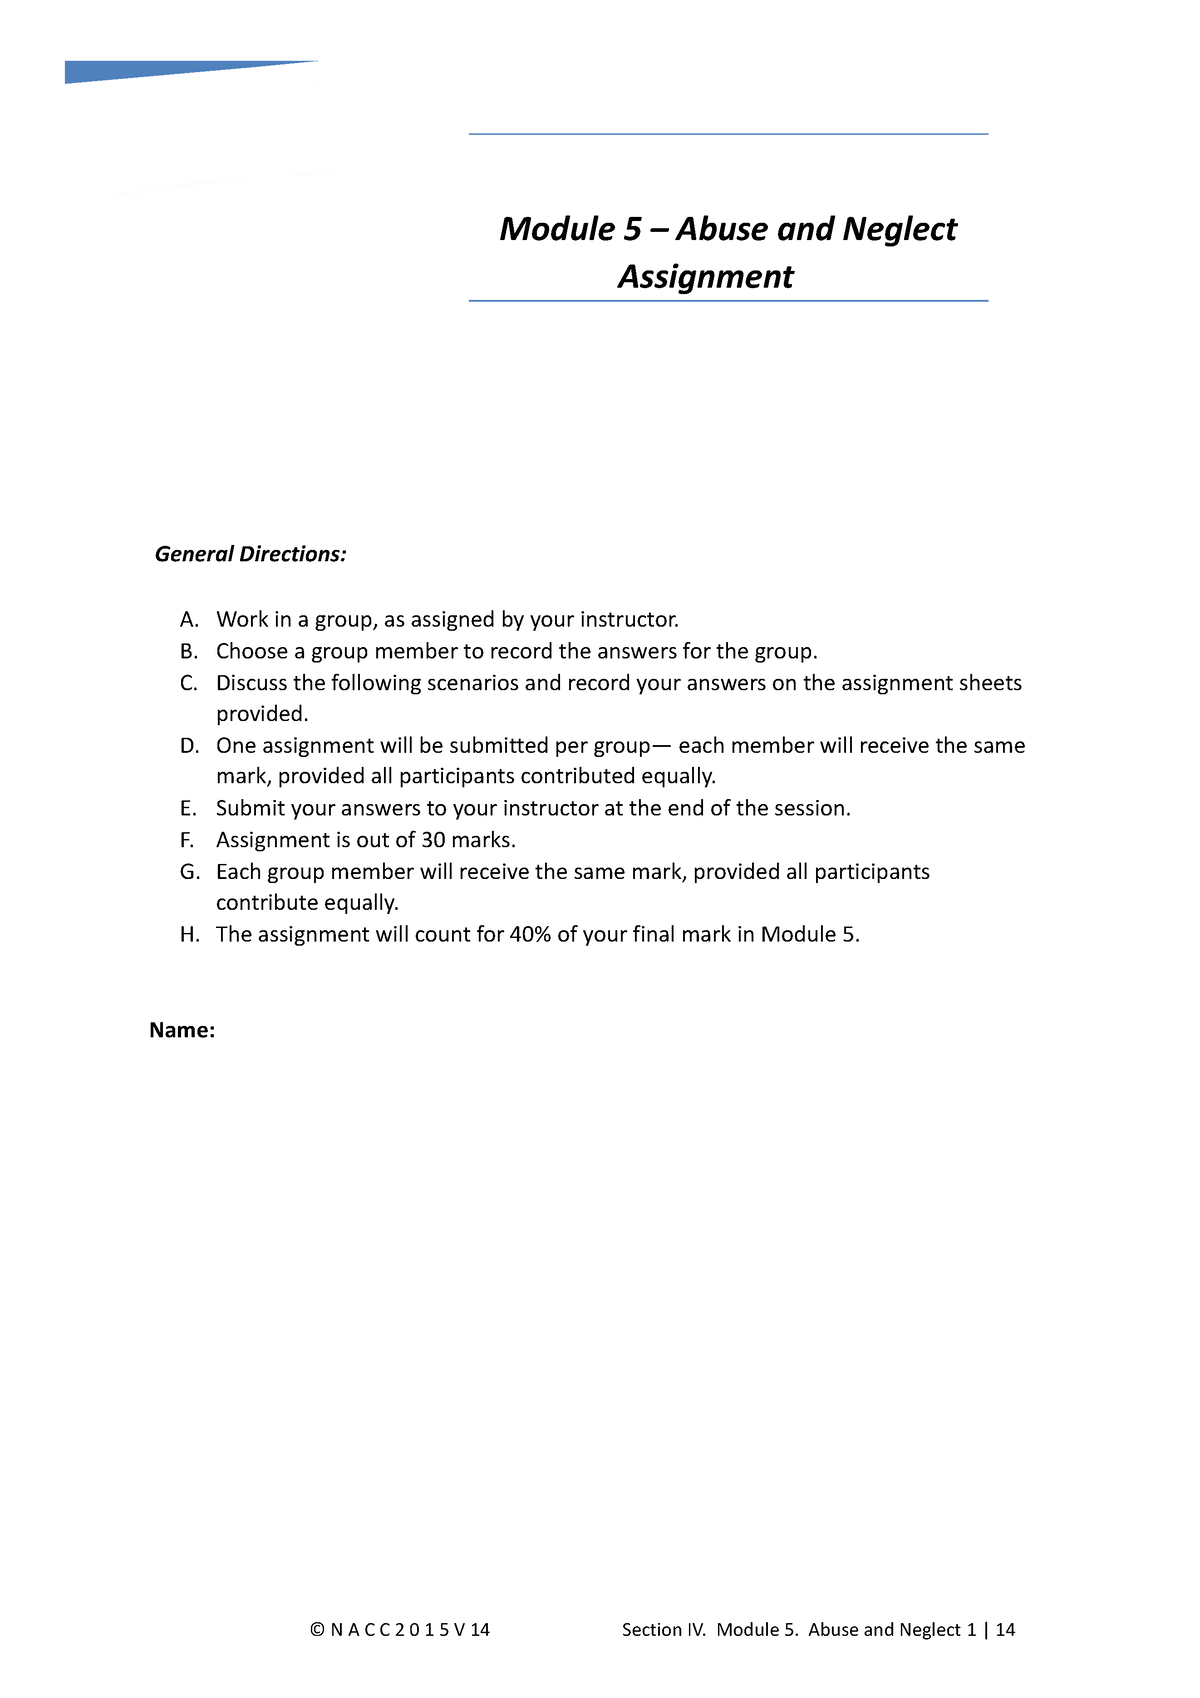 assignment module 5